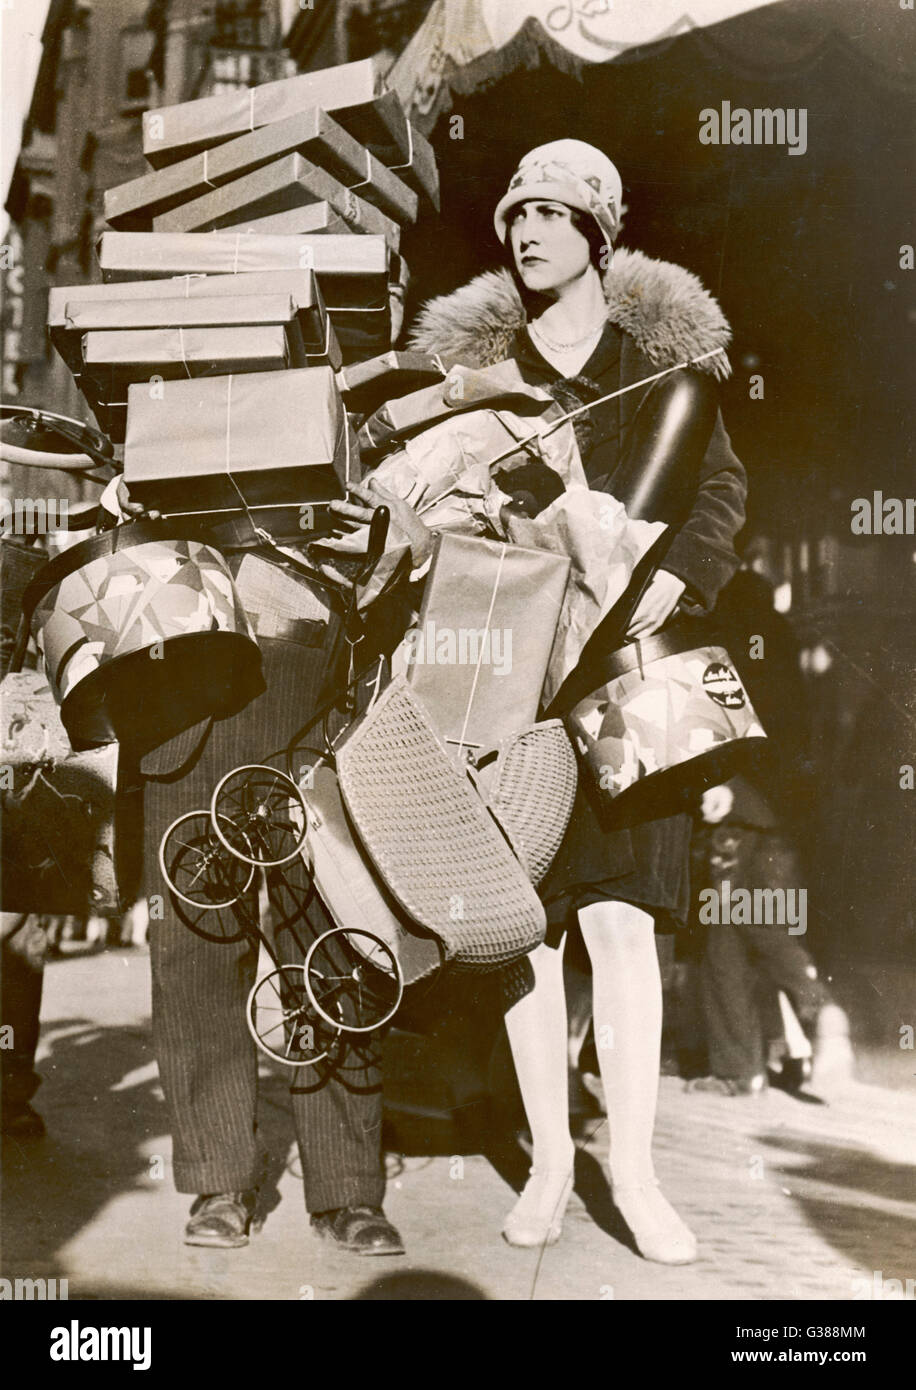 Una donna è stata molto occupata shopping, tanto che la sua helper è nascosta al di sotto di una pila di colli. Data: 1920s Foto Stock